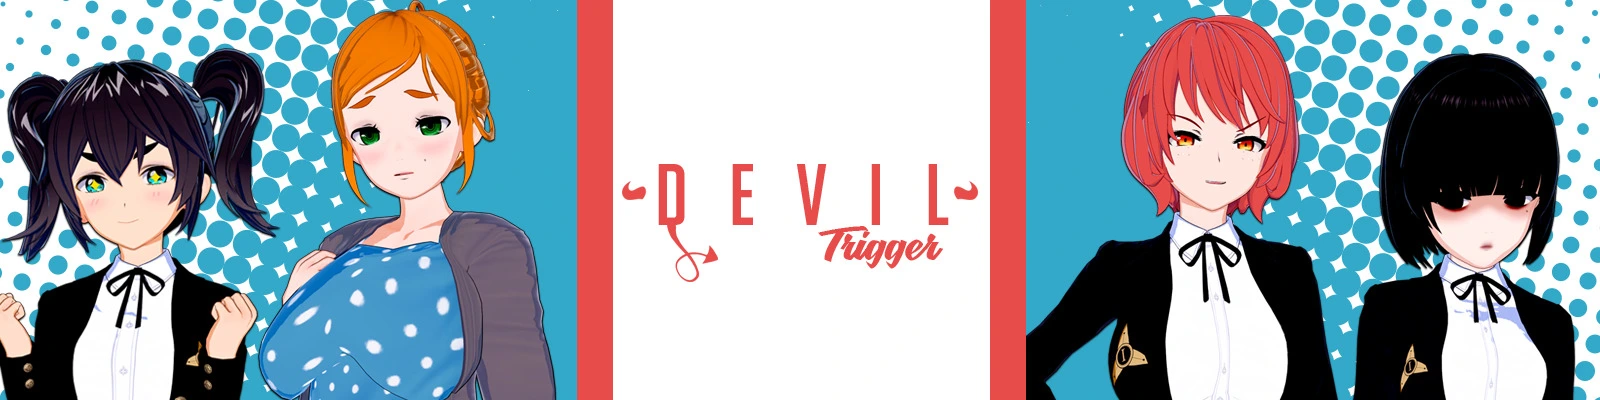 Devil Trigger main image